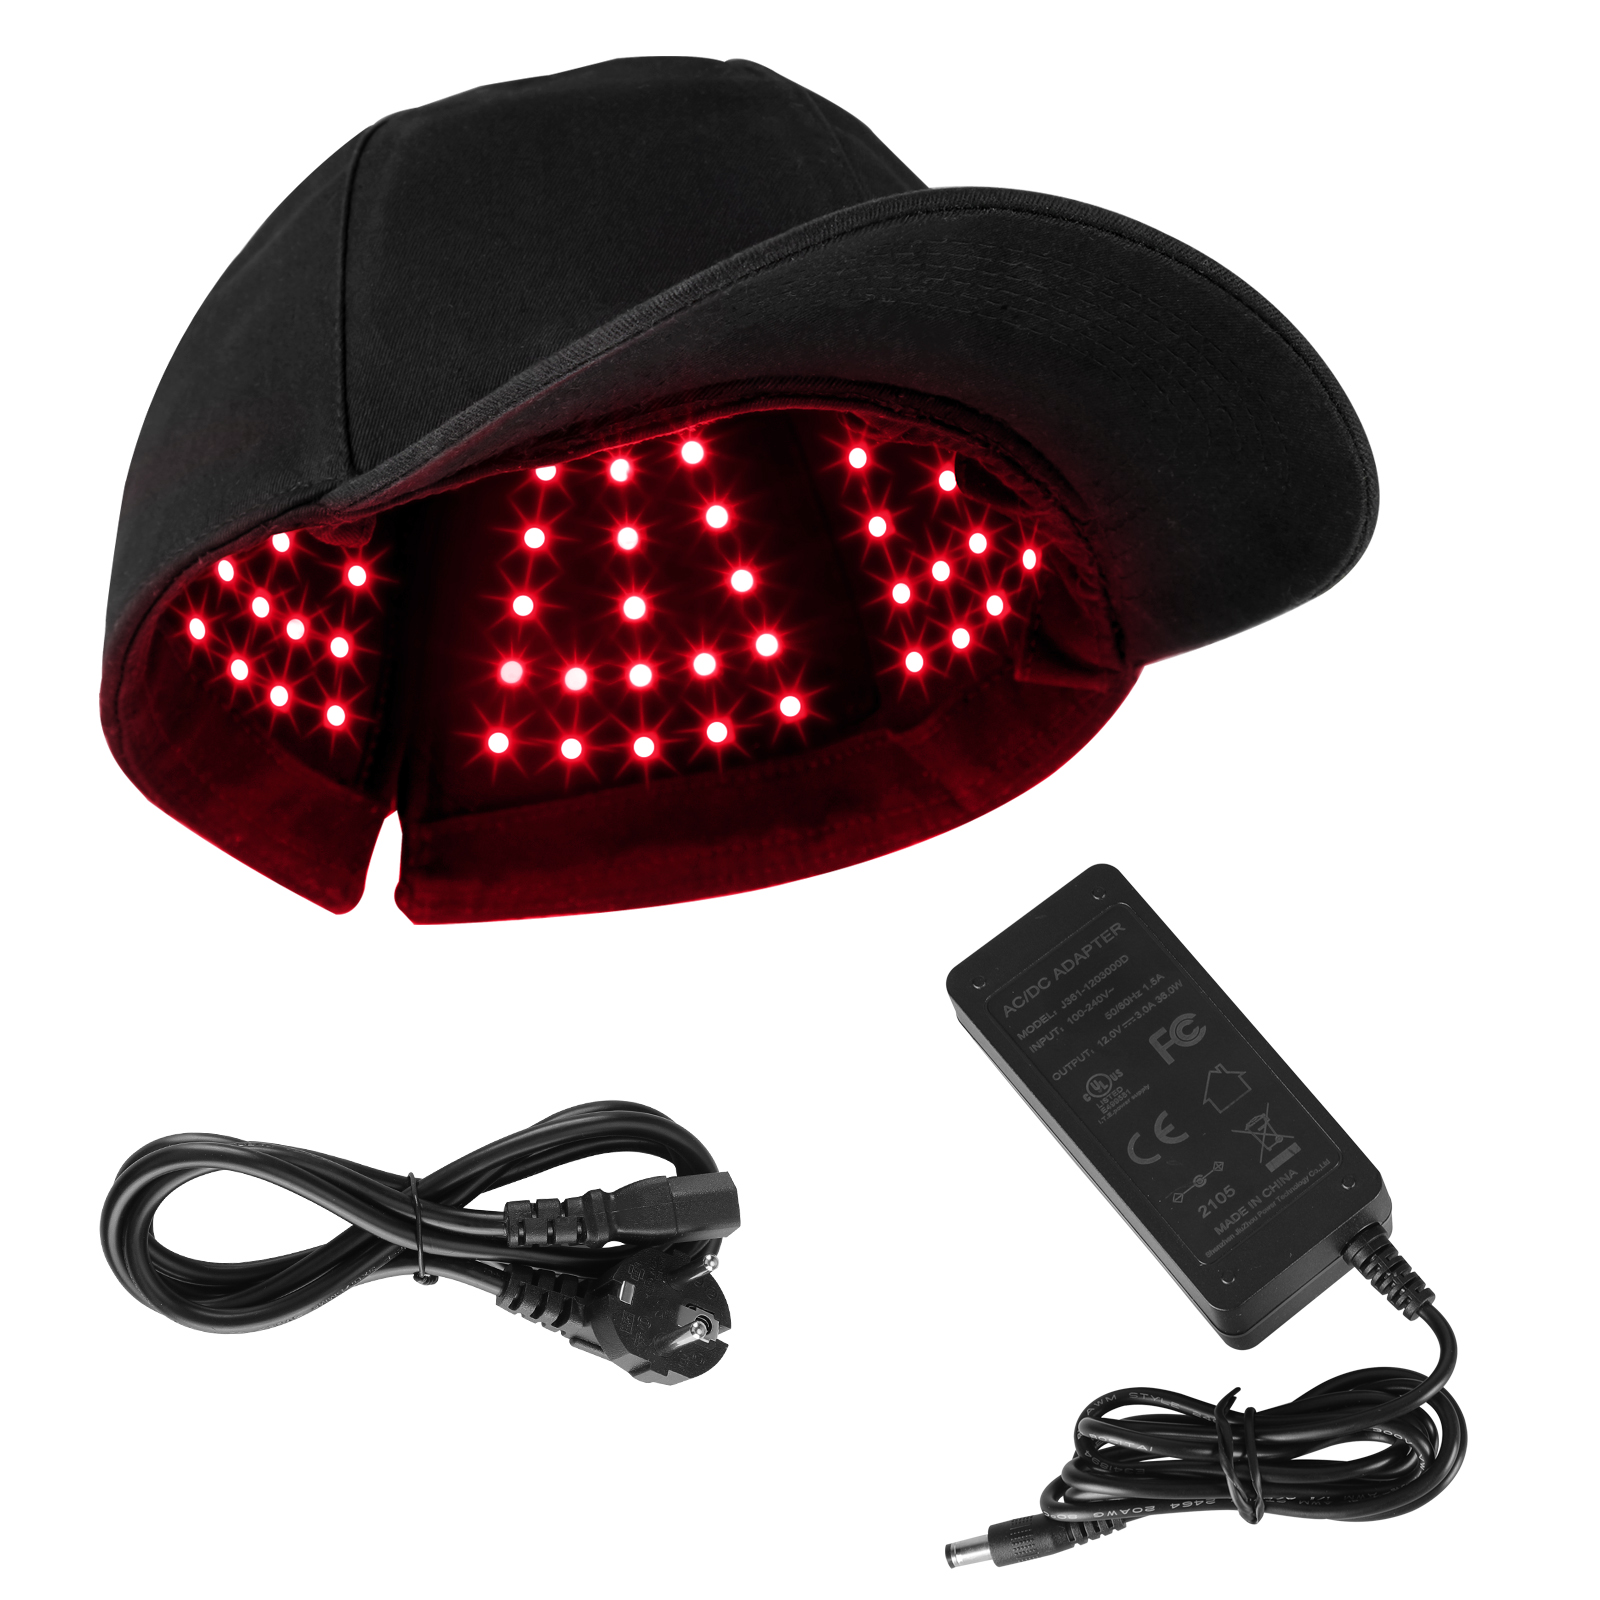 Melhor fornecedor de chapéu de terapia de luz vermelha